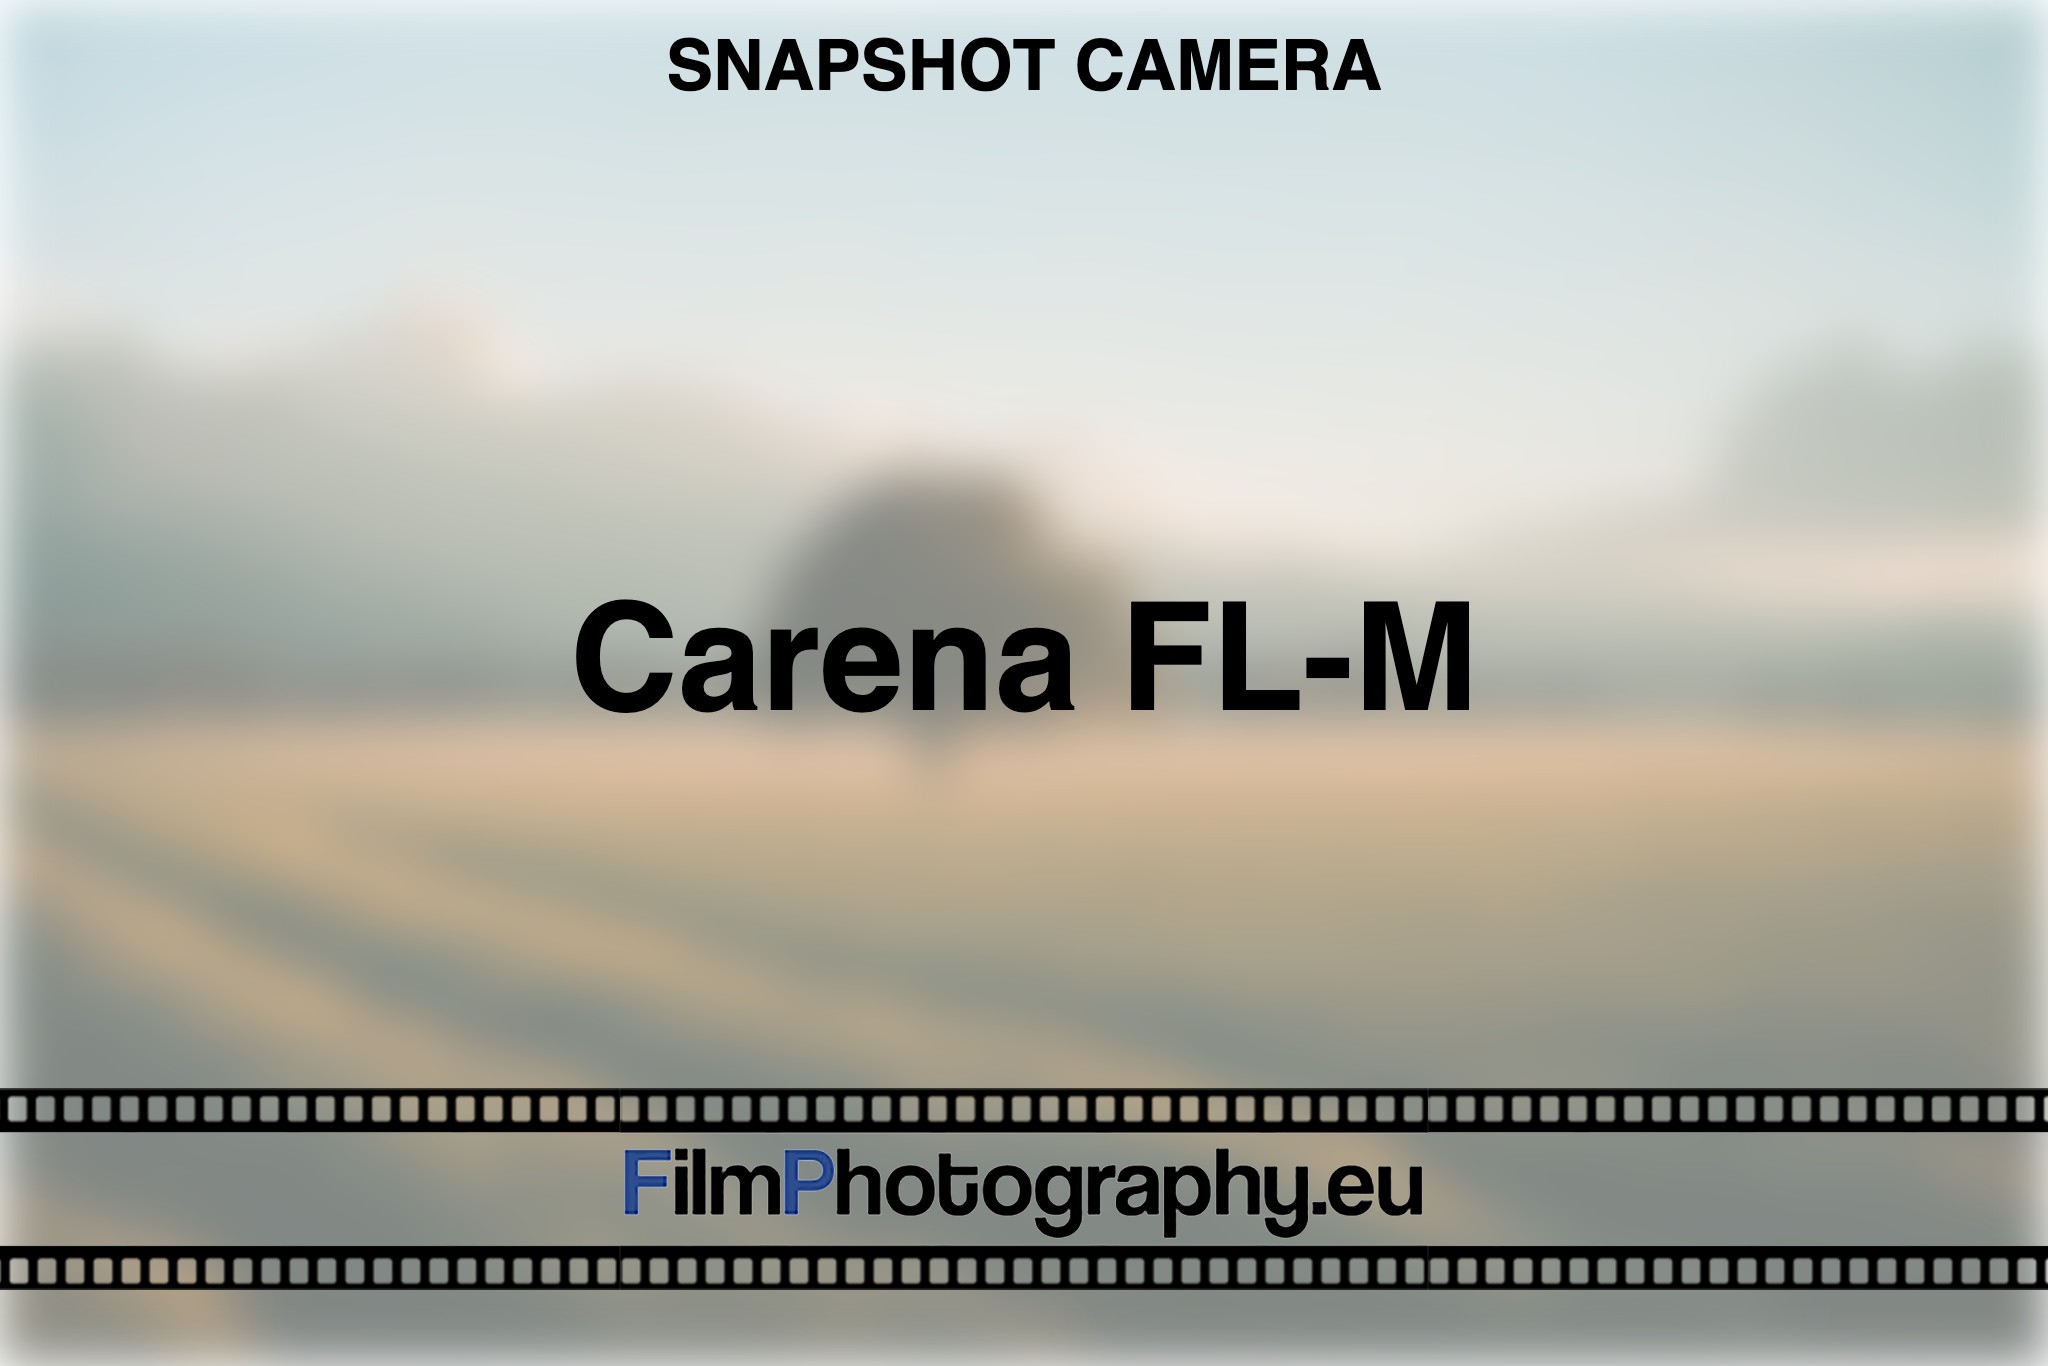 carena-fl-m-snapshot-camera-bnv